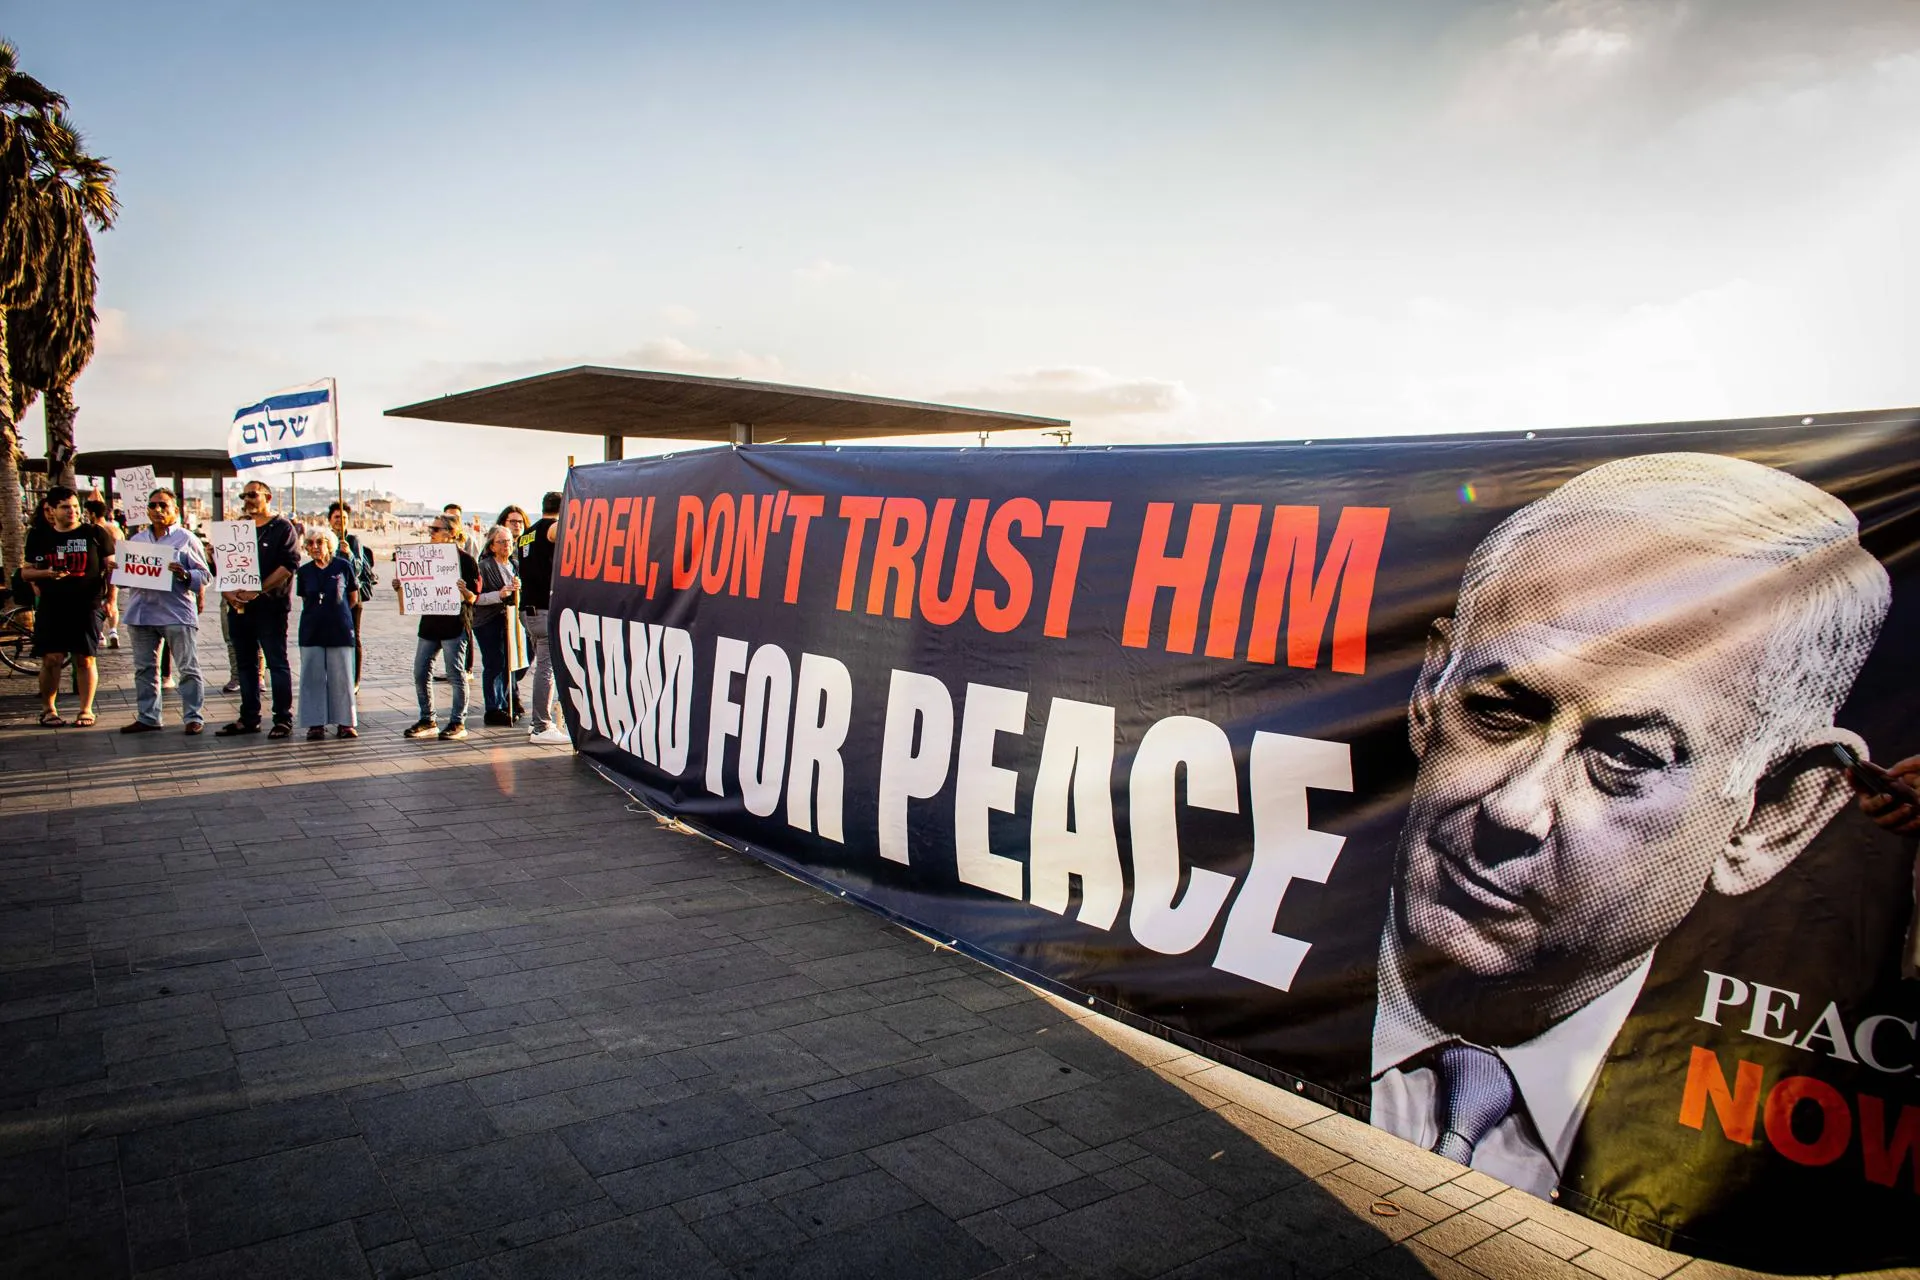 «Байден, не верь ему! Выступи за мир», — надпись на плакате против премьера Израиля Биньямина Нетаньяху, Тель-Авив